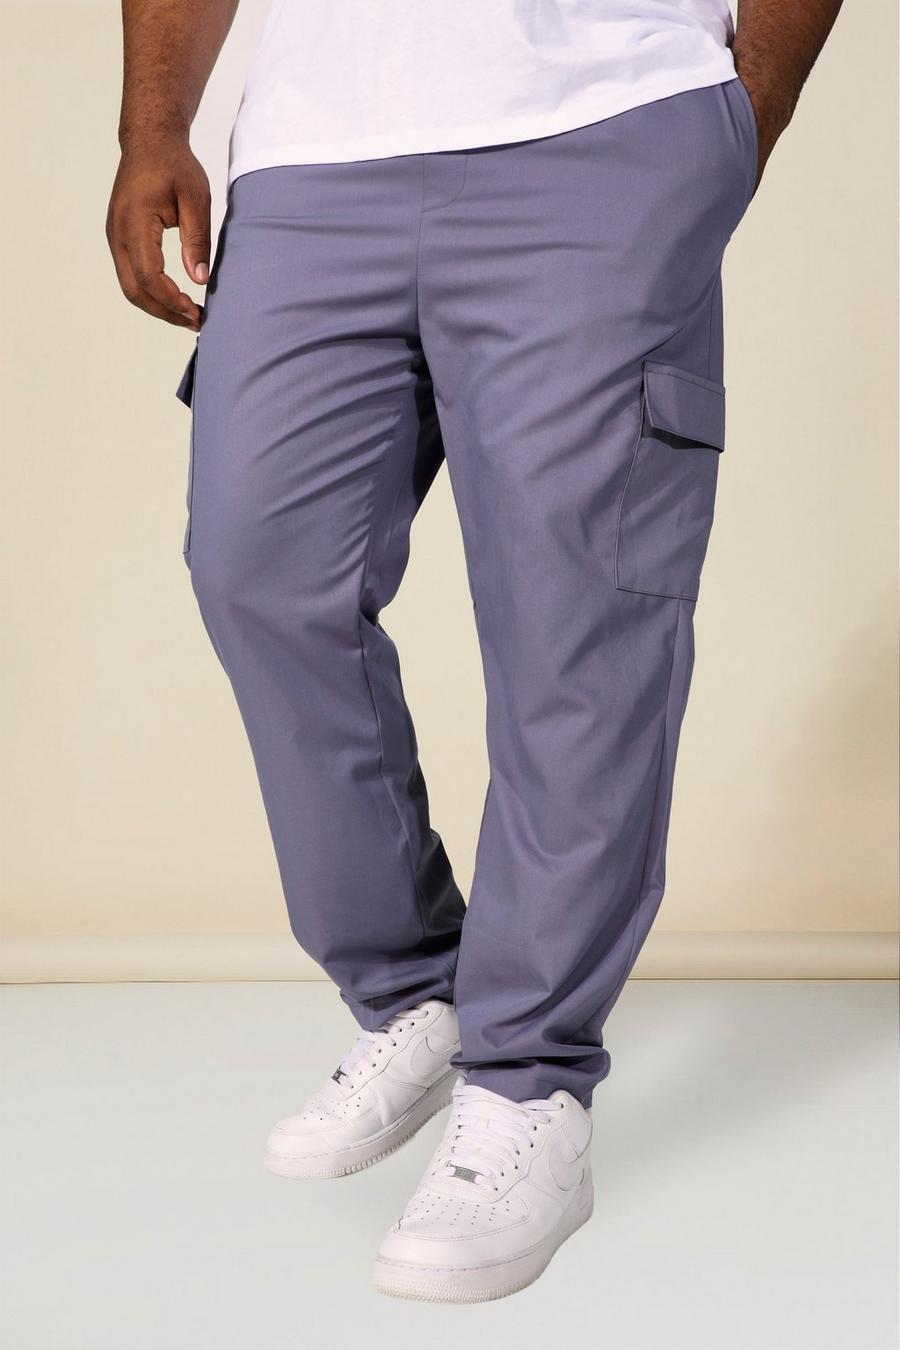 צפחה gris מכנסי חליפה דגמ'ח בגזרת סקיני, מידות גדולות